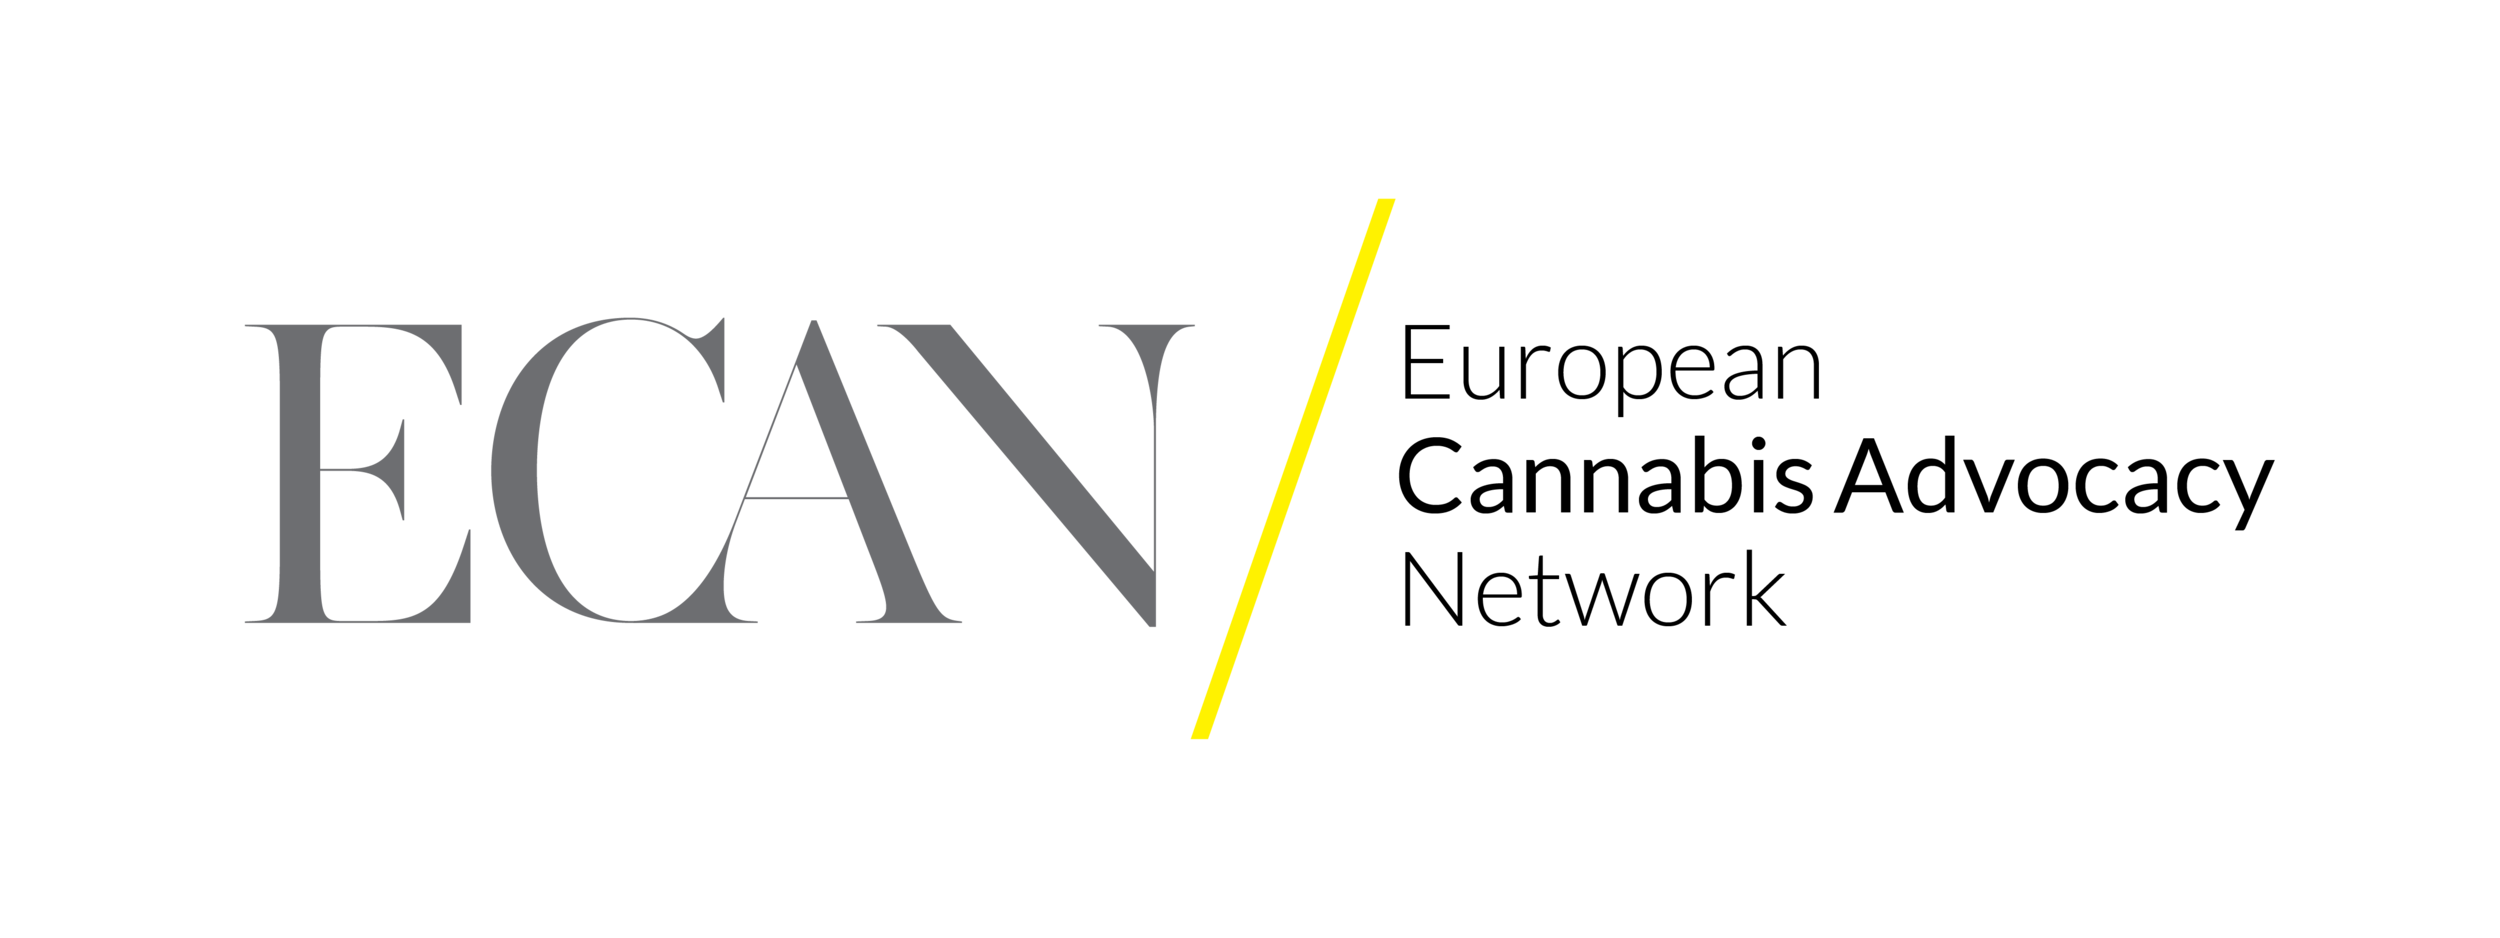 ECAN logo.png